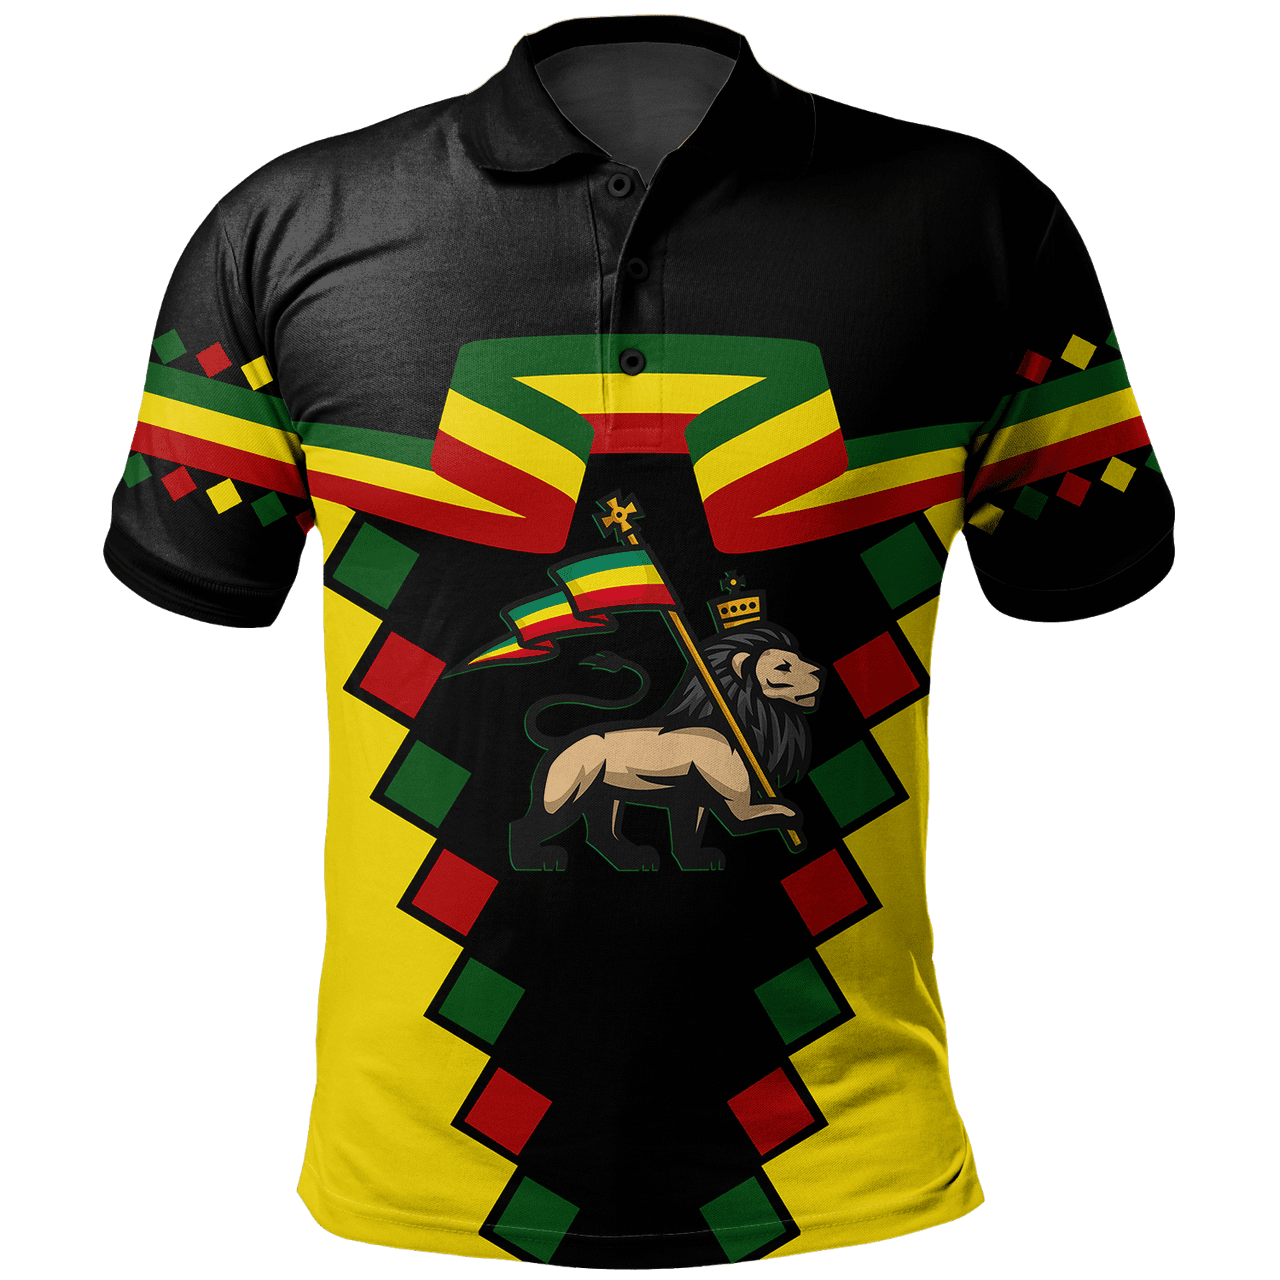 Ethiopia Polo Shirt Lion Of Zion